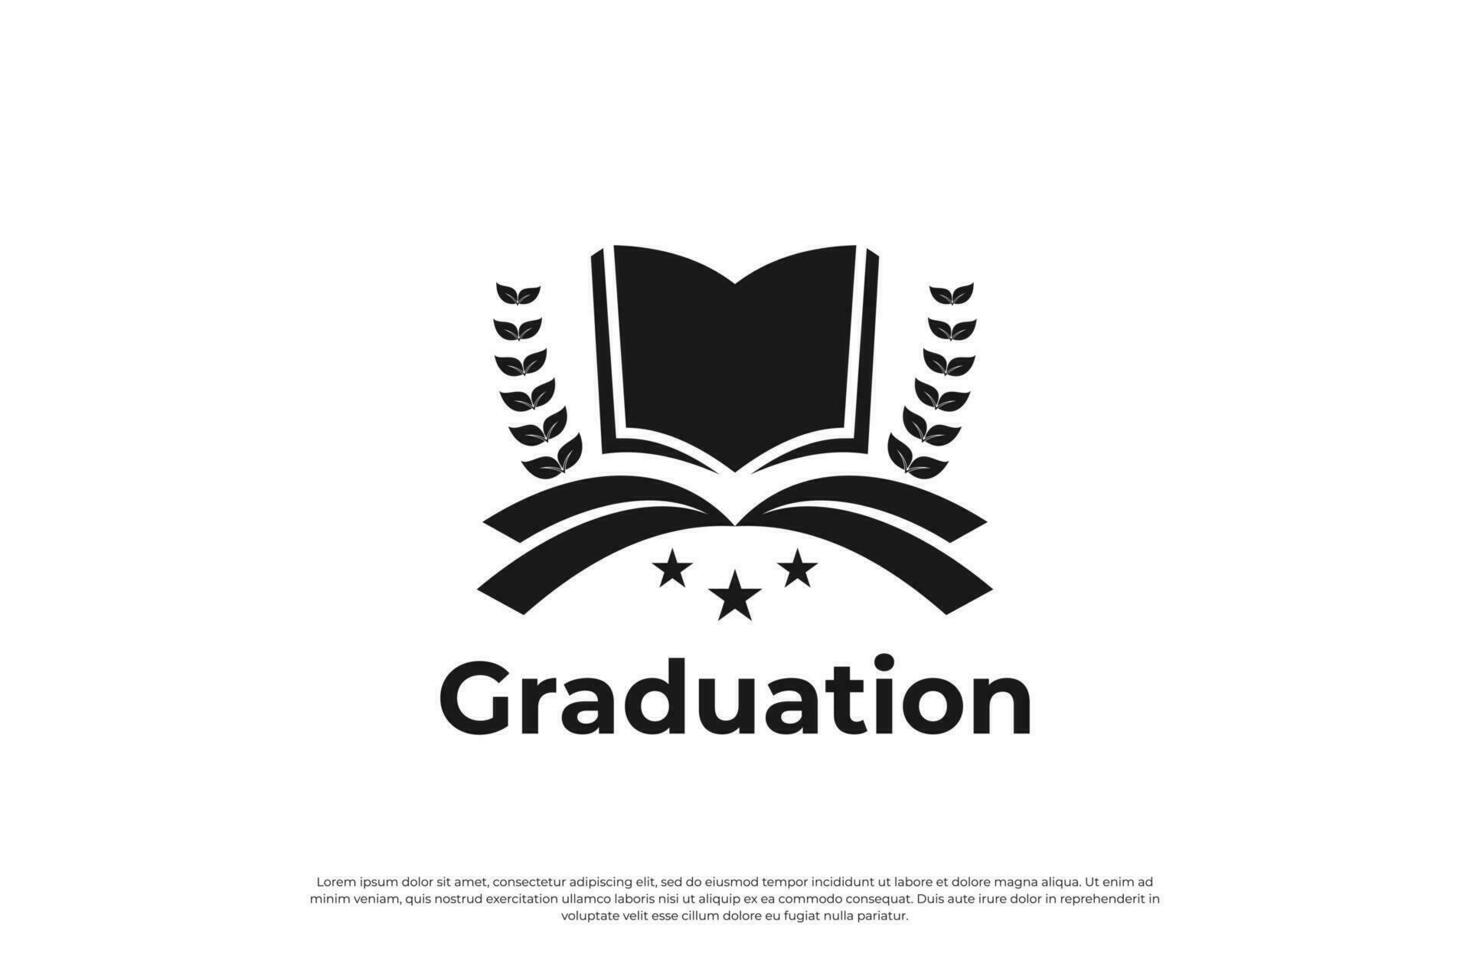 creatief onderwijs logo ontwerp voor Universiteit, college en diploma uitreiking. vector